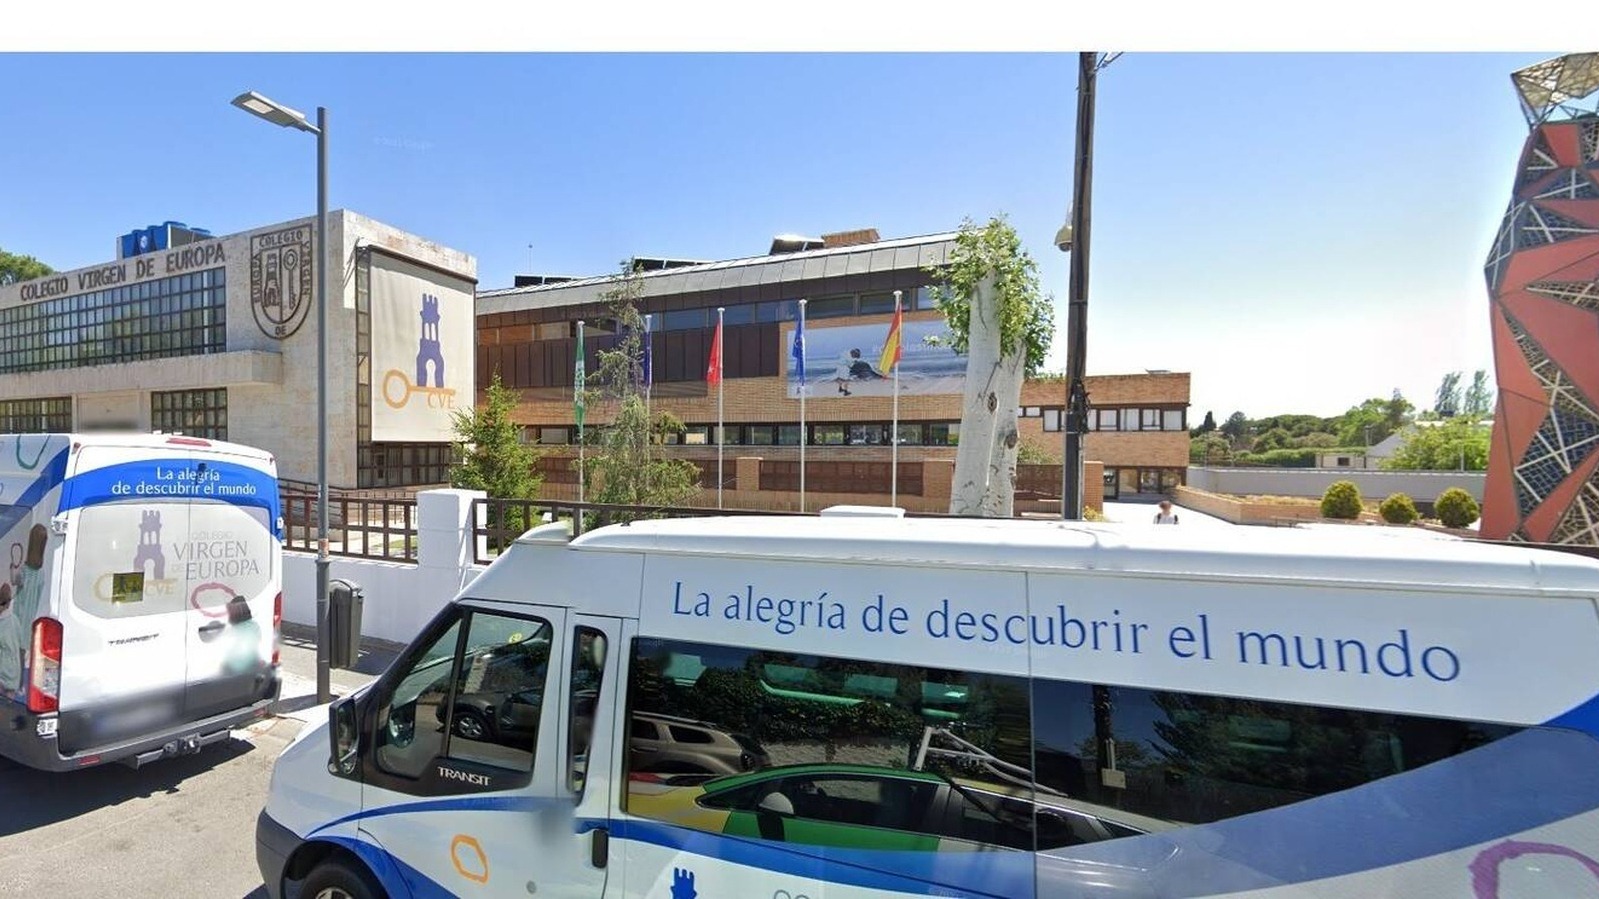 Dimite el director del colegio Virgen del Europa y la Comunidad de Madrid critica que el centro no comunicara la investigación al profesor